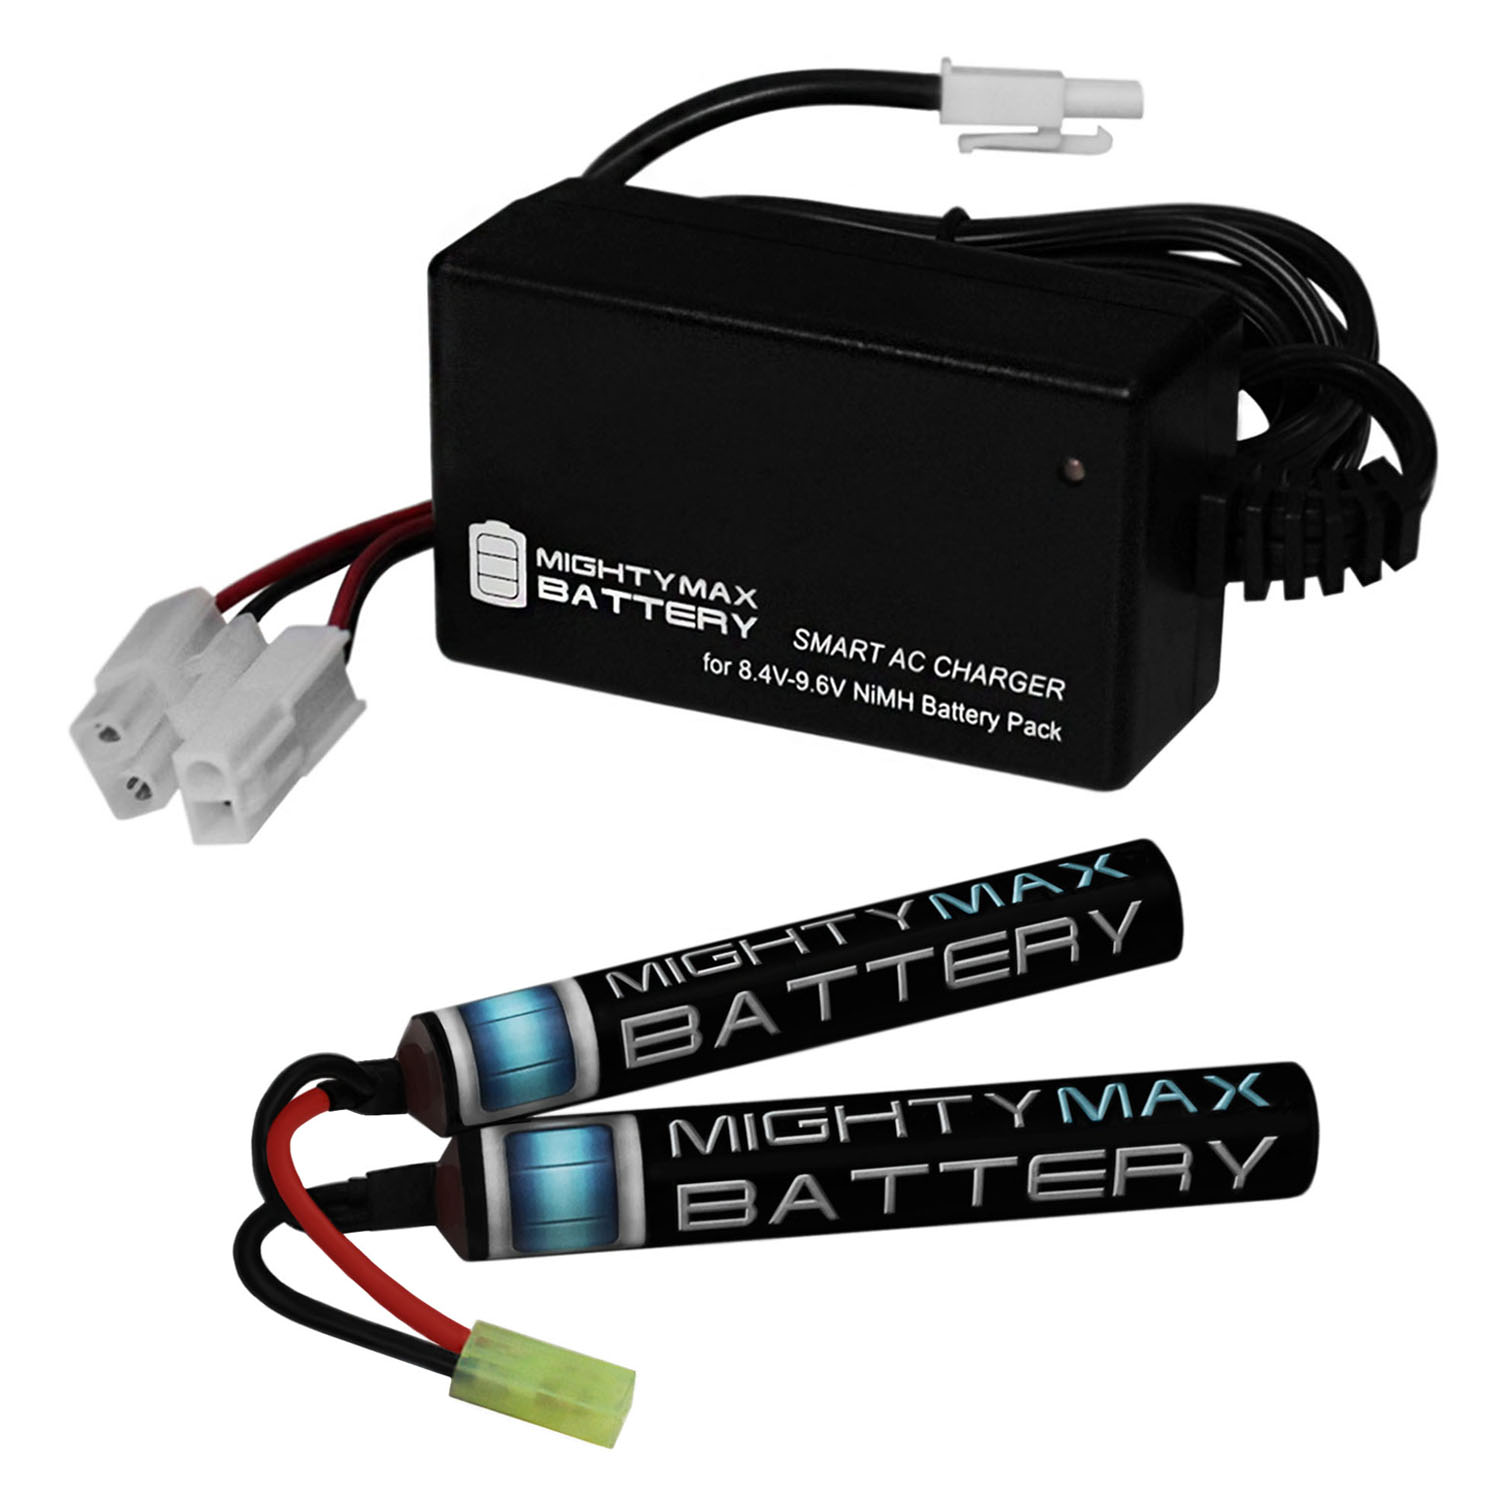 9.6V 1600mAh Butterfly Battery Pack + 8.4V-9.6V NiMH Smart Charger